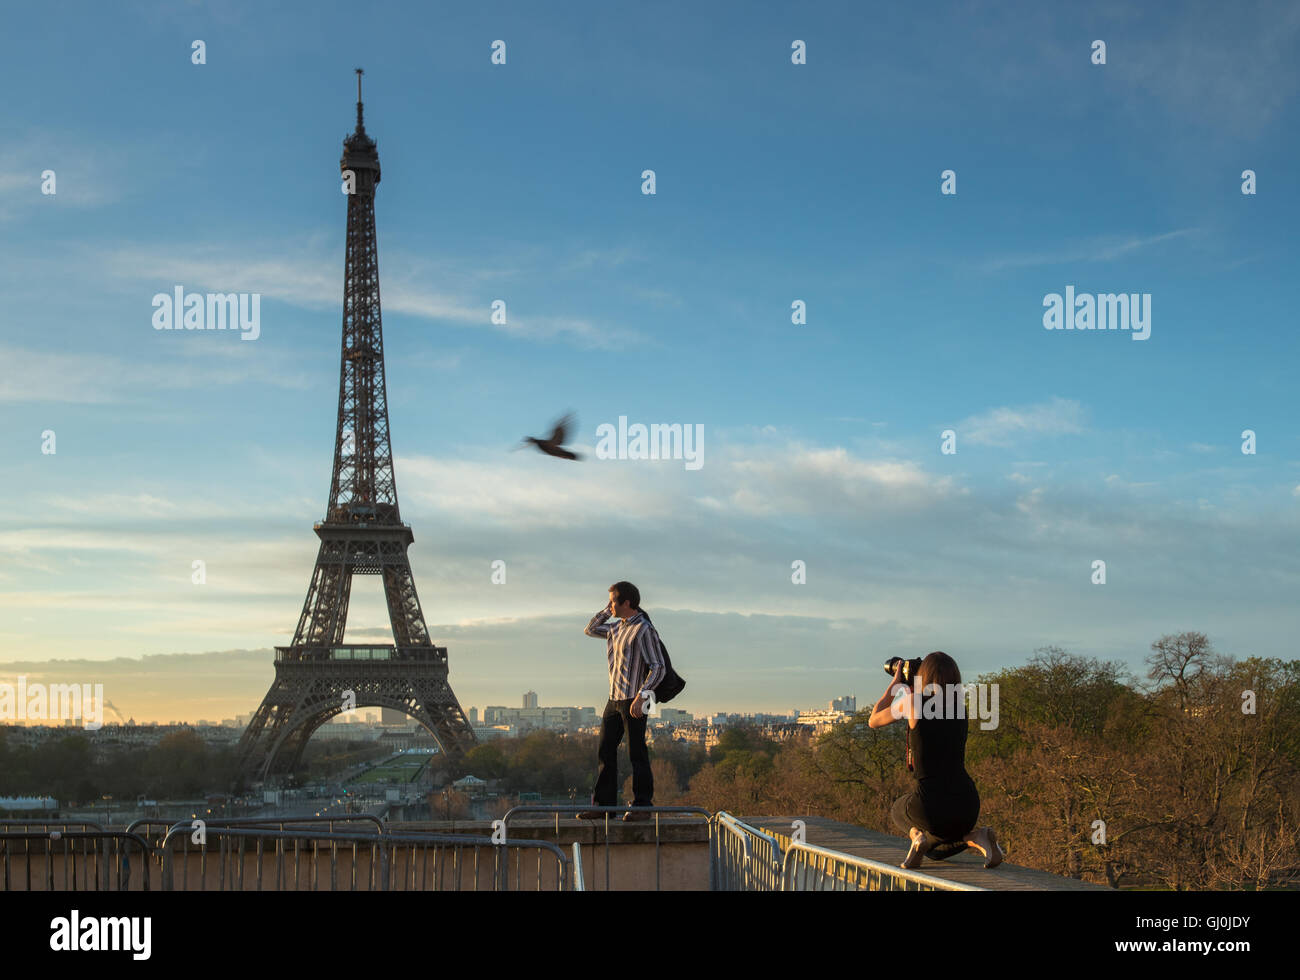 La photographie de mode et d'oiseaux au Palais de Chaillot, avec la Tour Eiffel en toile de fond, Paris, France Banque D'Images